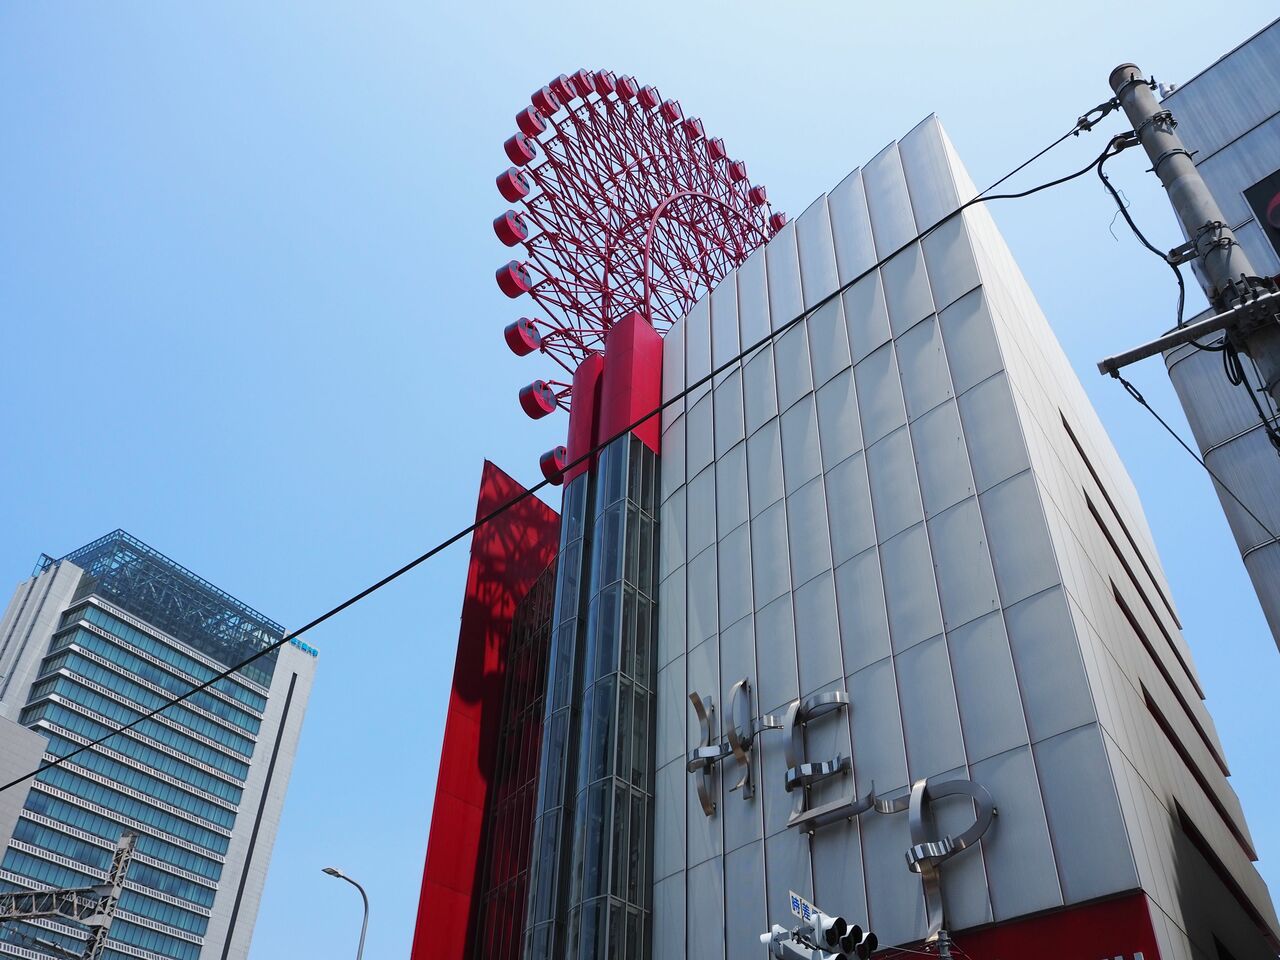 HEP FIVE　大阪市、1998年に誕生した世界初のビル一体型の観覧車。10階建ビルHEP FIVEの7階が乗り場になっており、ビル屋上を越えて最高点106mに達する。